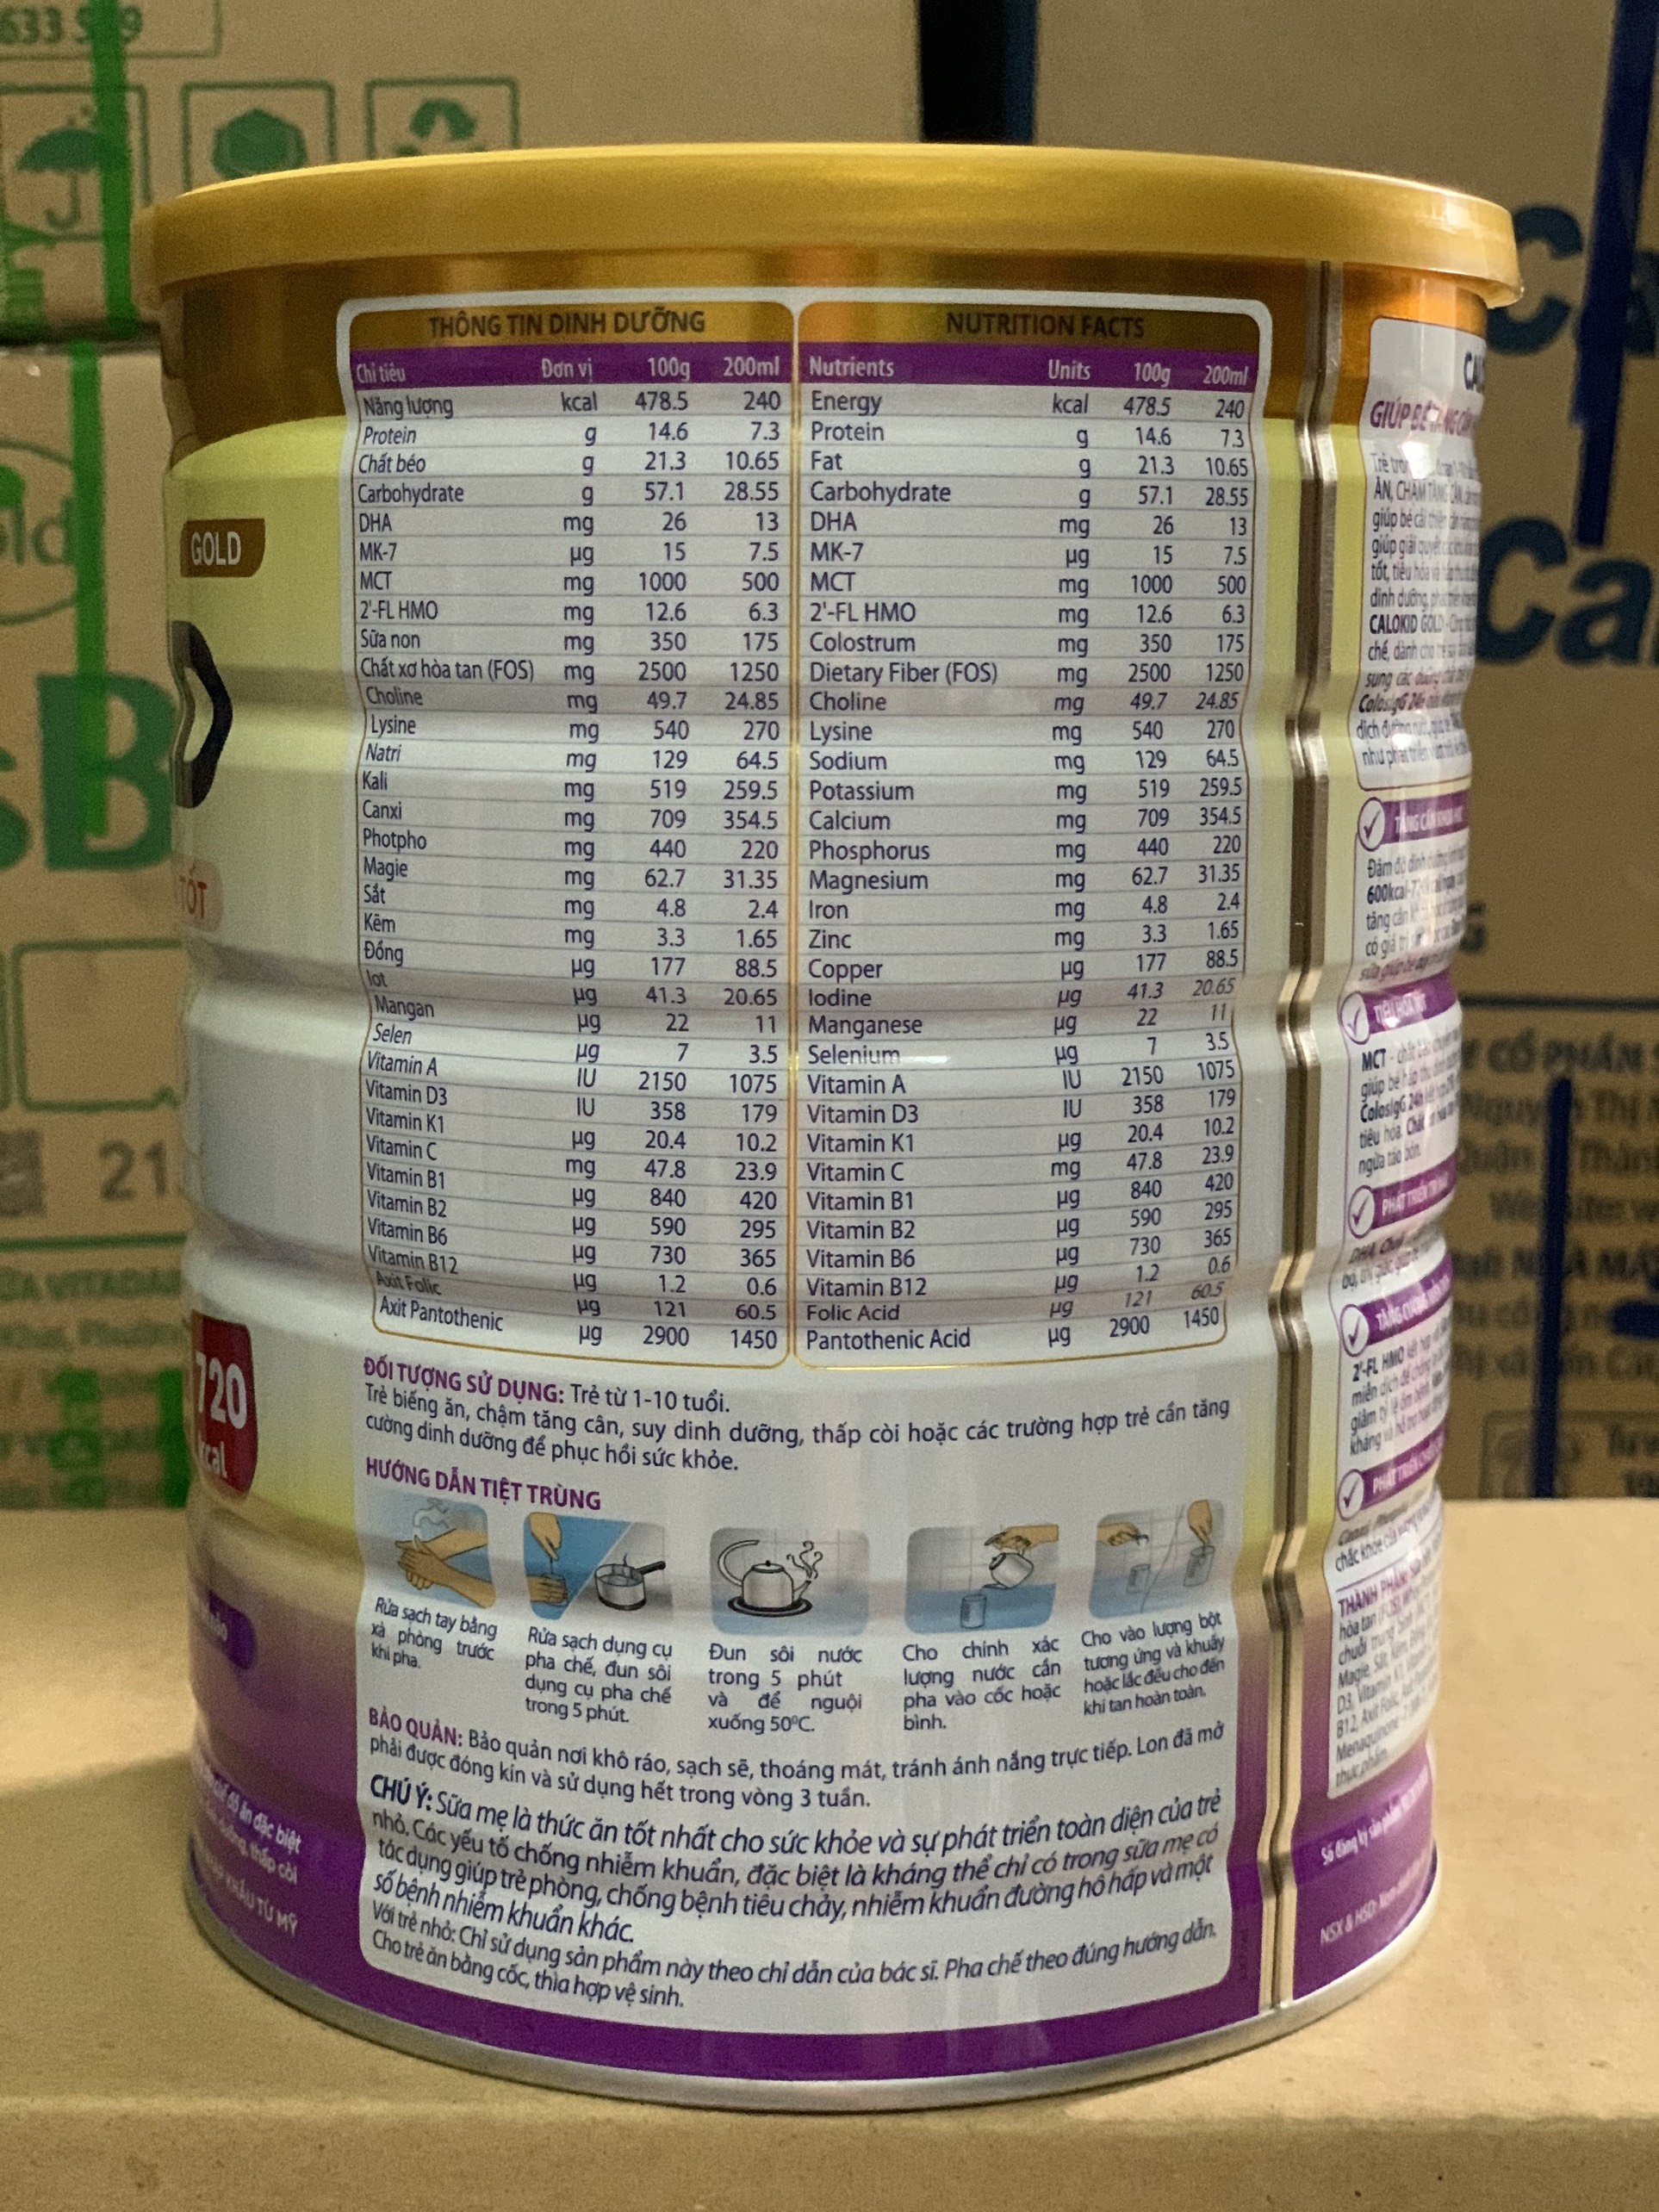 Sữa Calokid Gold 900g (trẻ biếng ăn 1 – 10 tuổi)